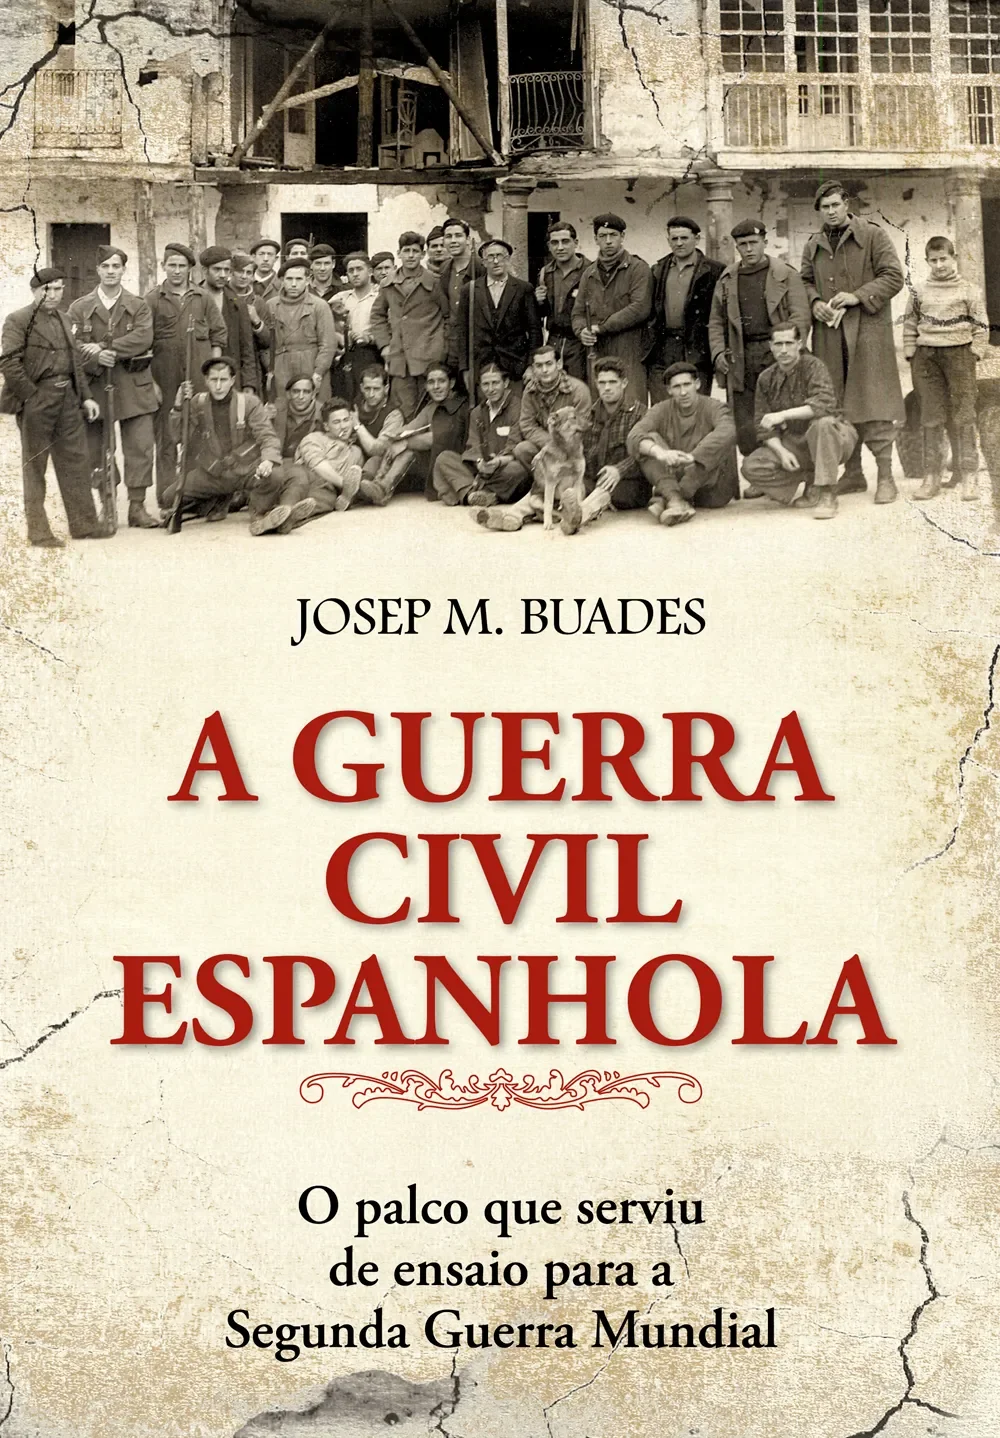 Livro El Mercenario de Steven Pressfield (Espanhol)